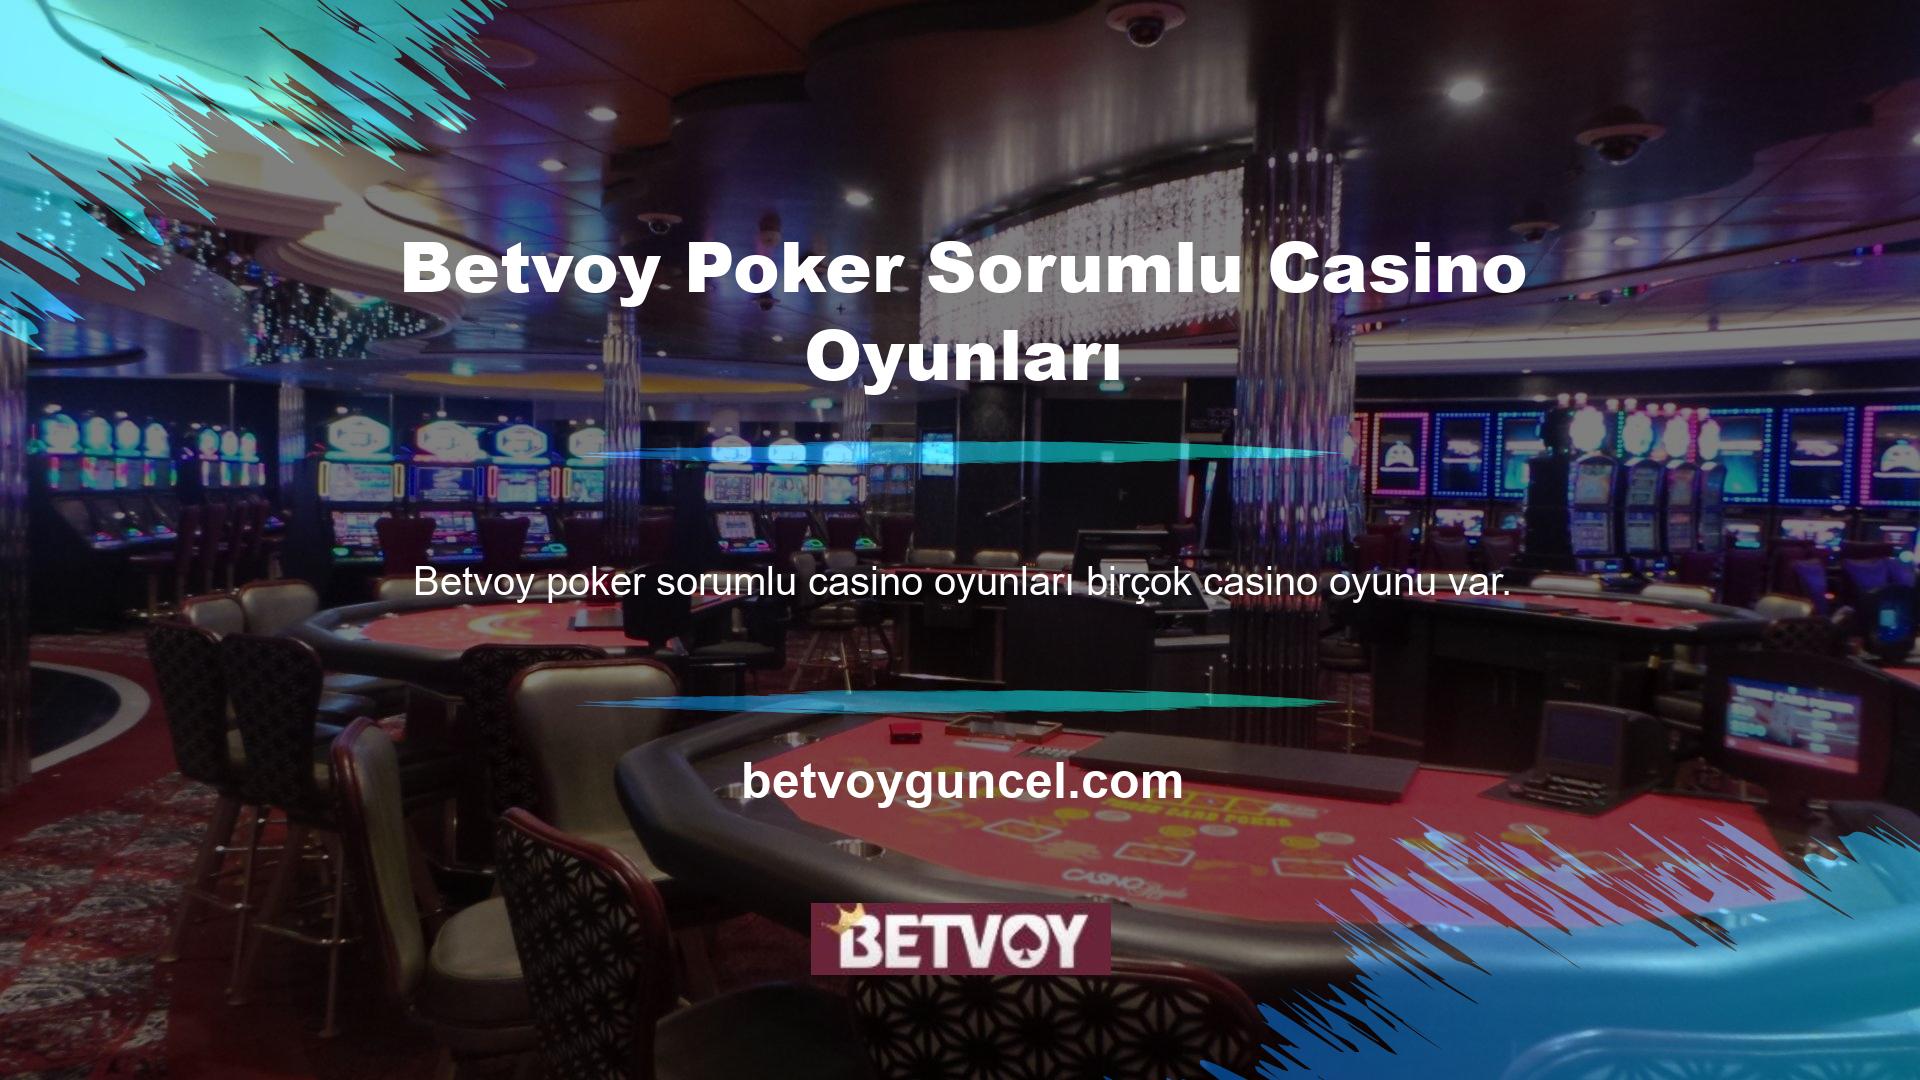 Poker oyunu Betvoy Poker en popüler casino oyunlarından biridir